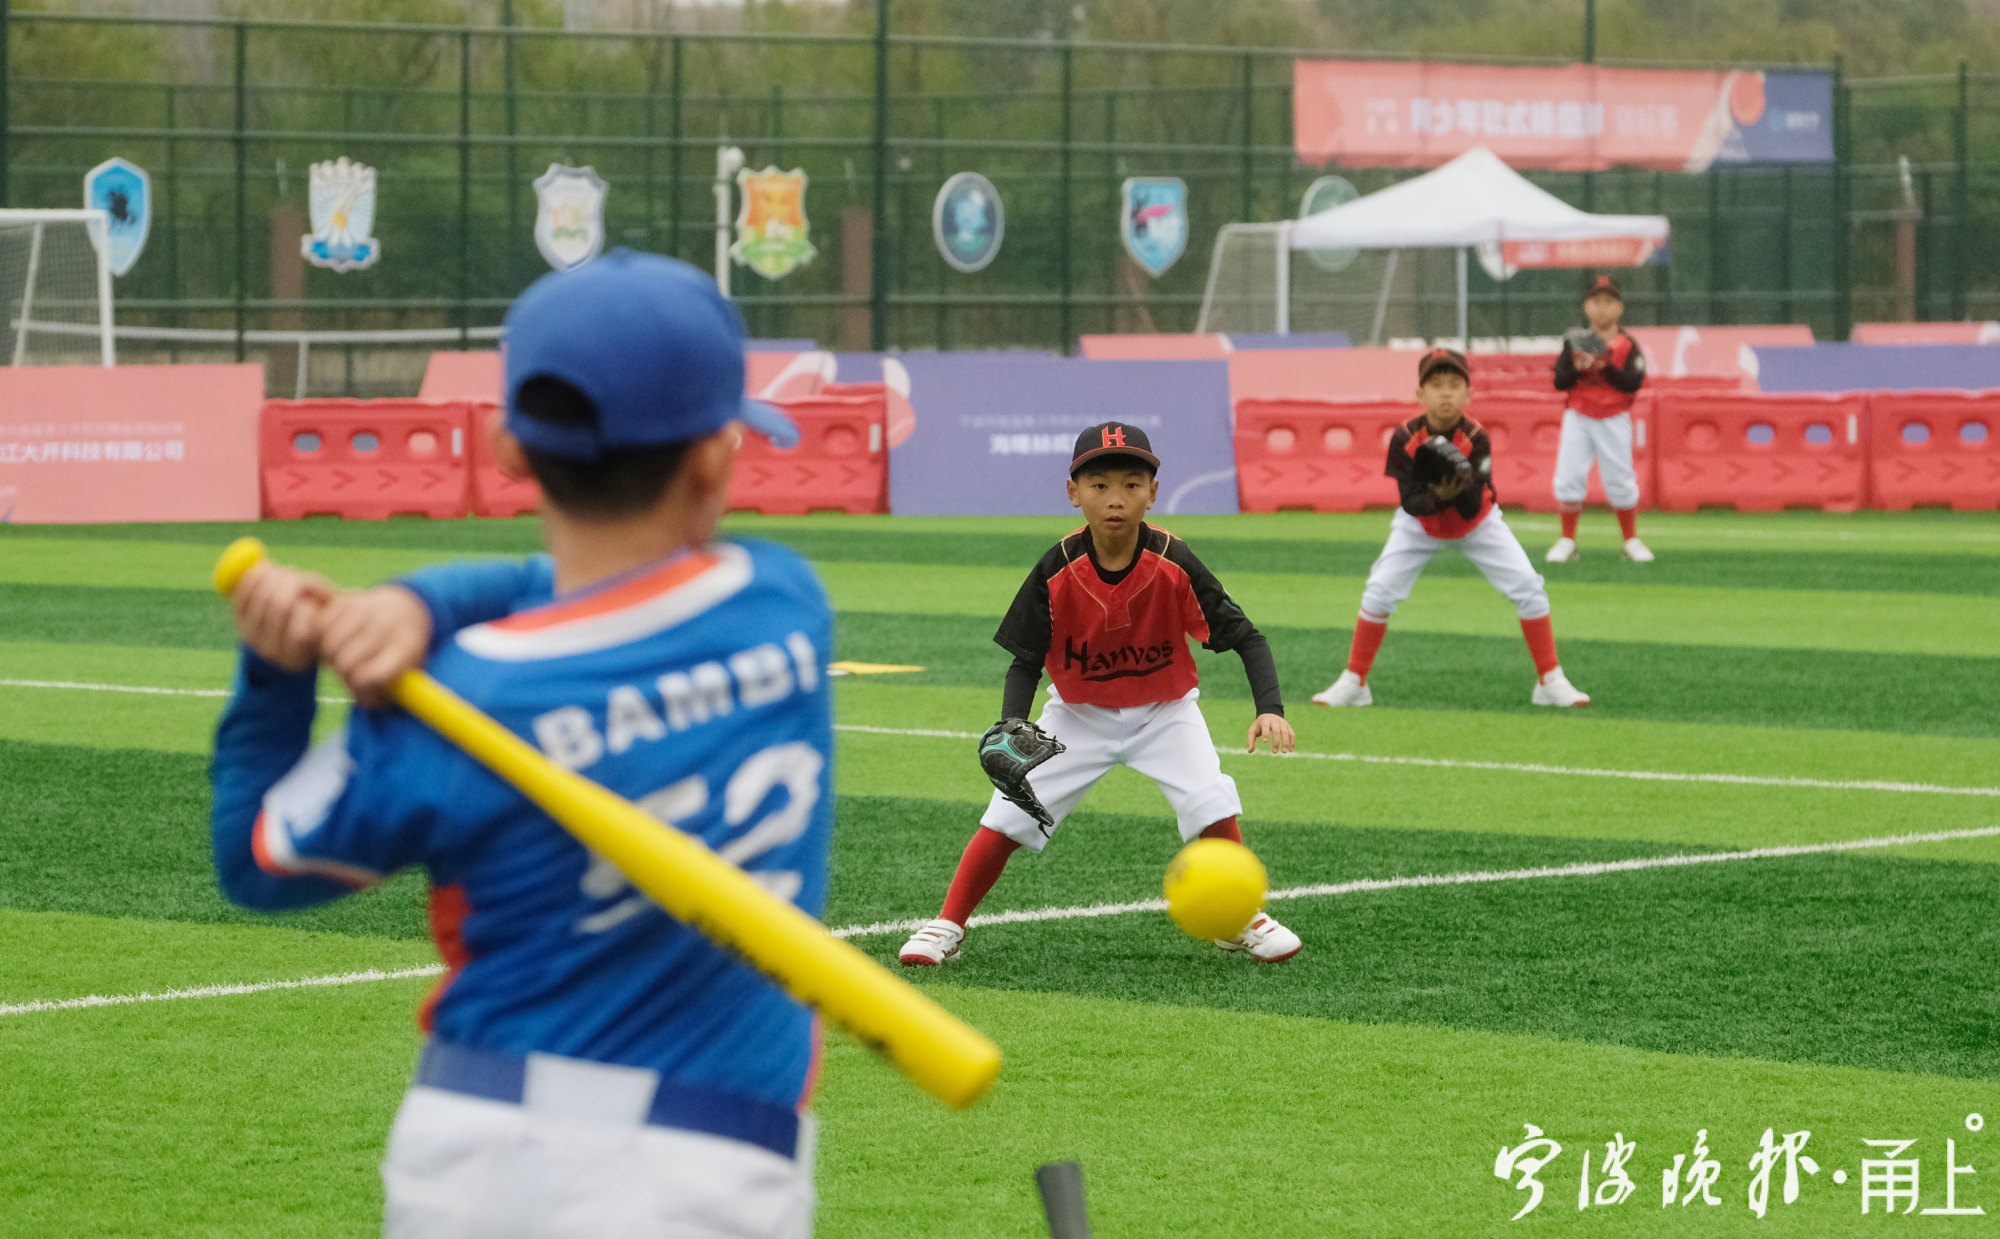 软式棒垒球这个青少年项目宁波为全省树了榜样